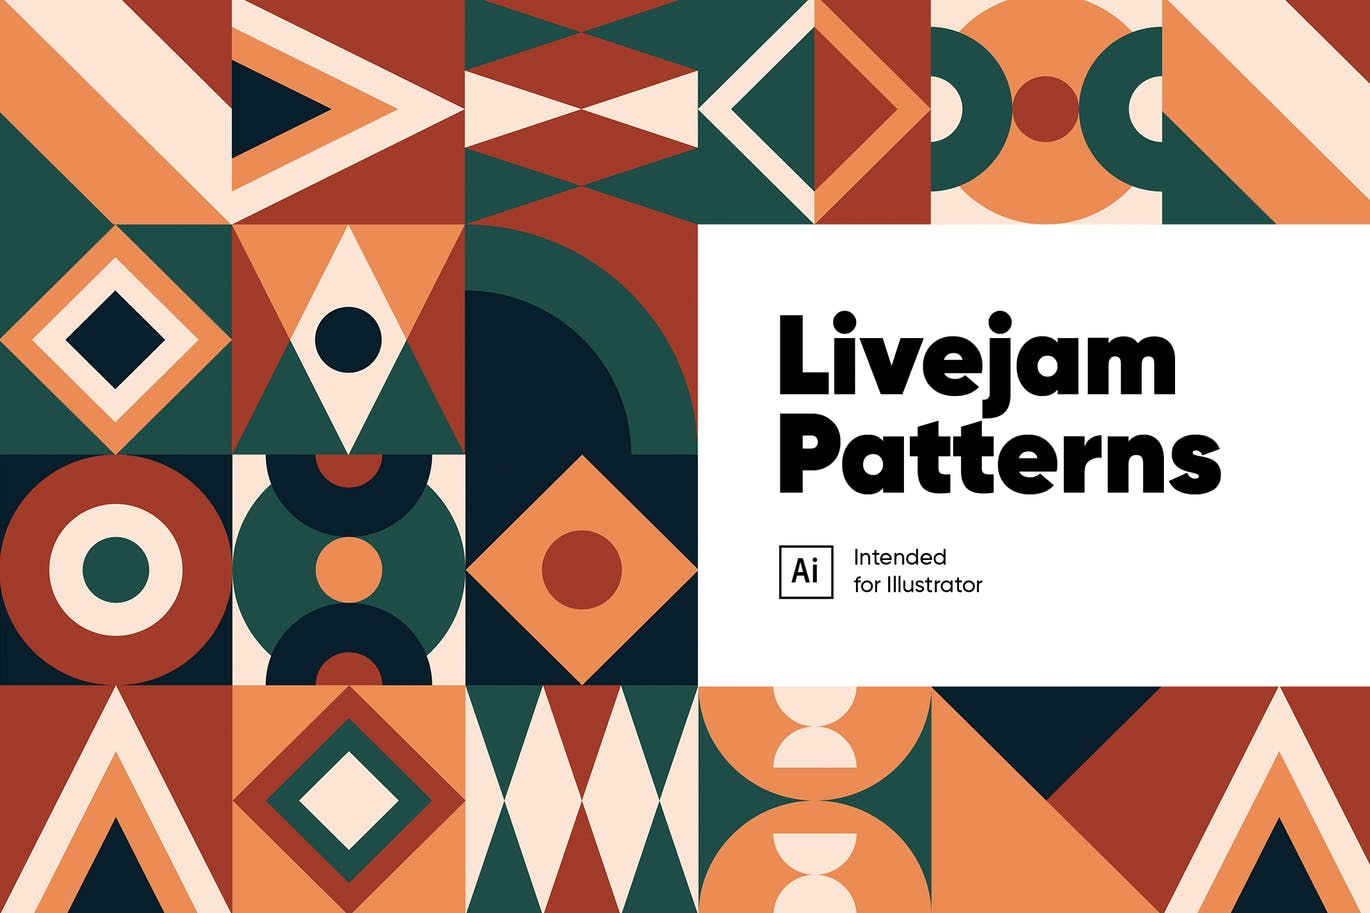 Livejam抽象图案背景非凡图库精选 Livejam Abstract Patterns Pack插图